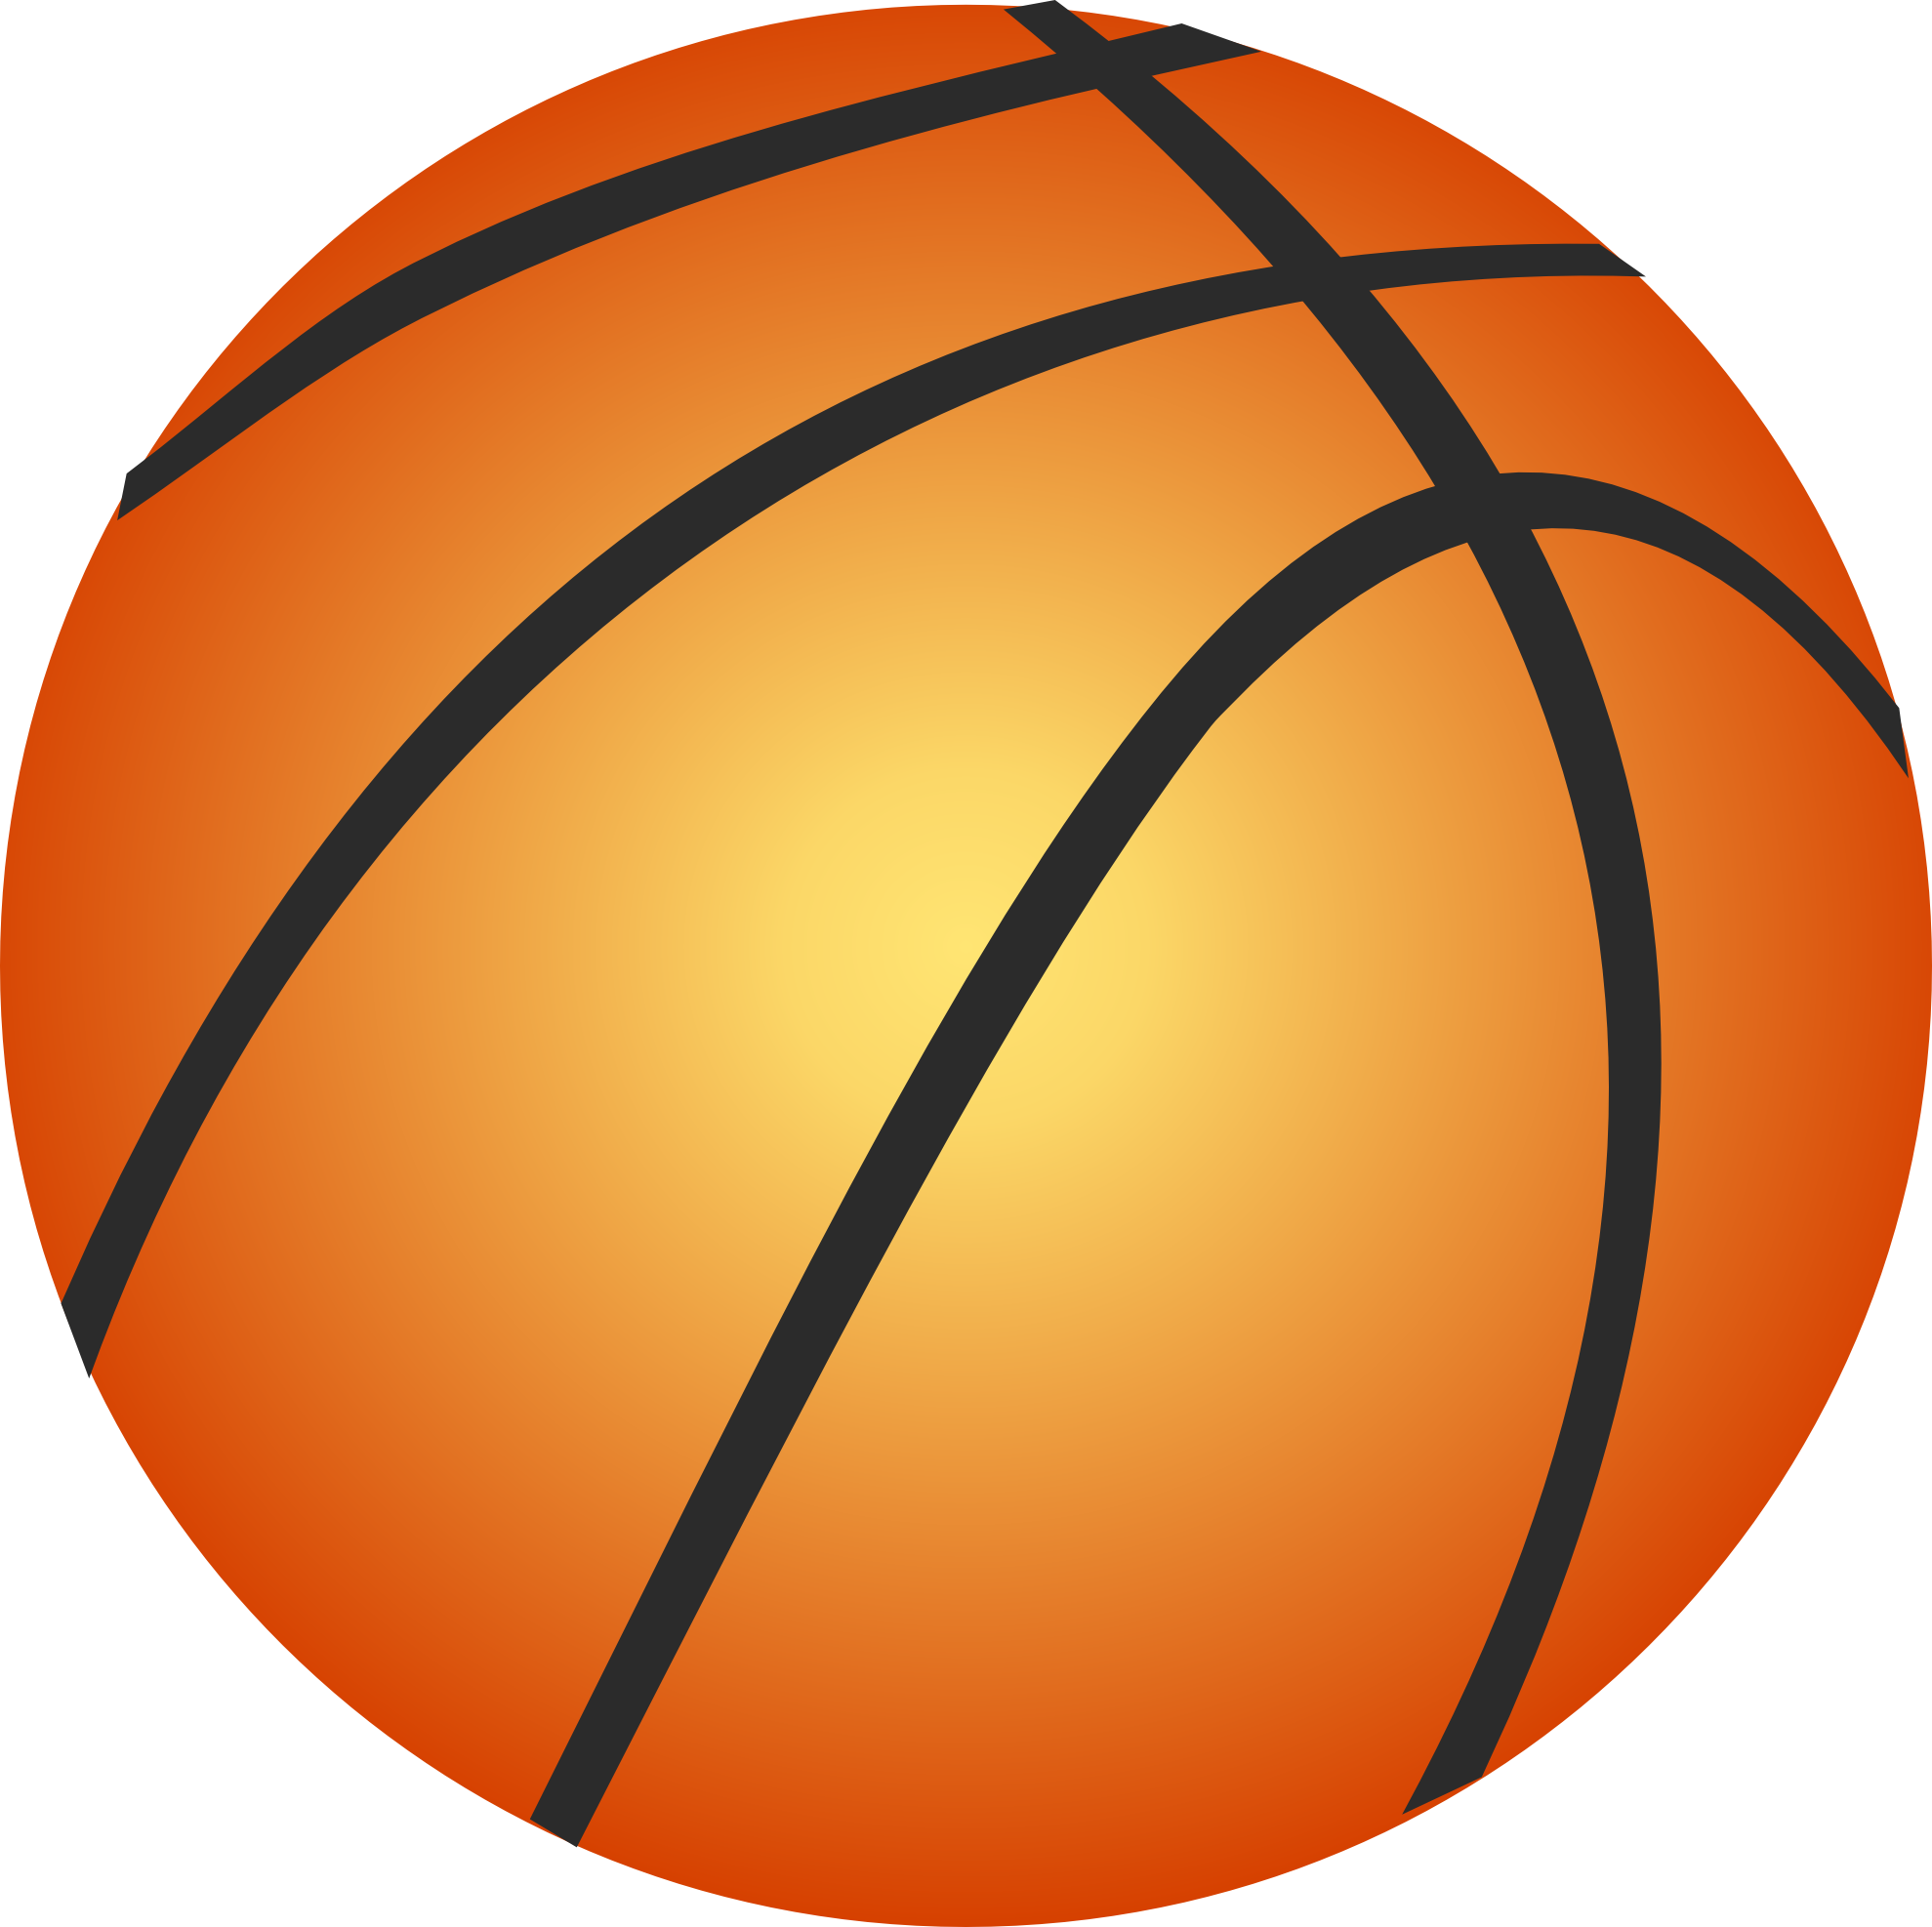 Баскетбольный мяч PNG